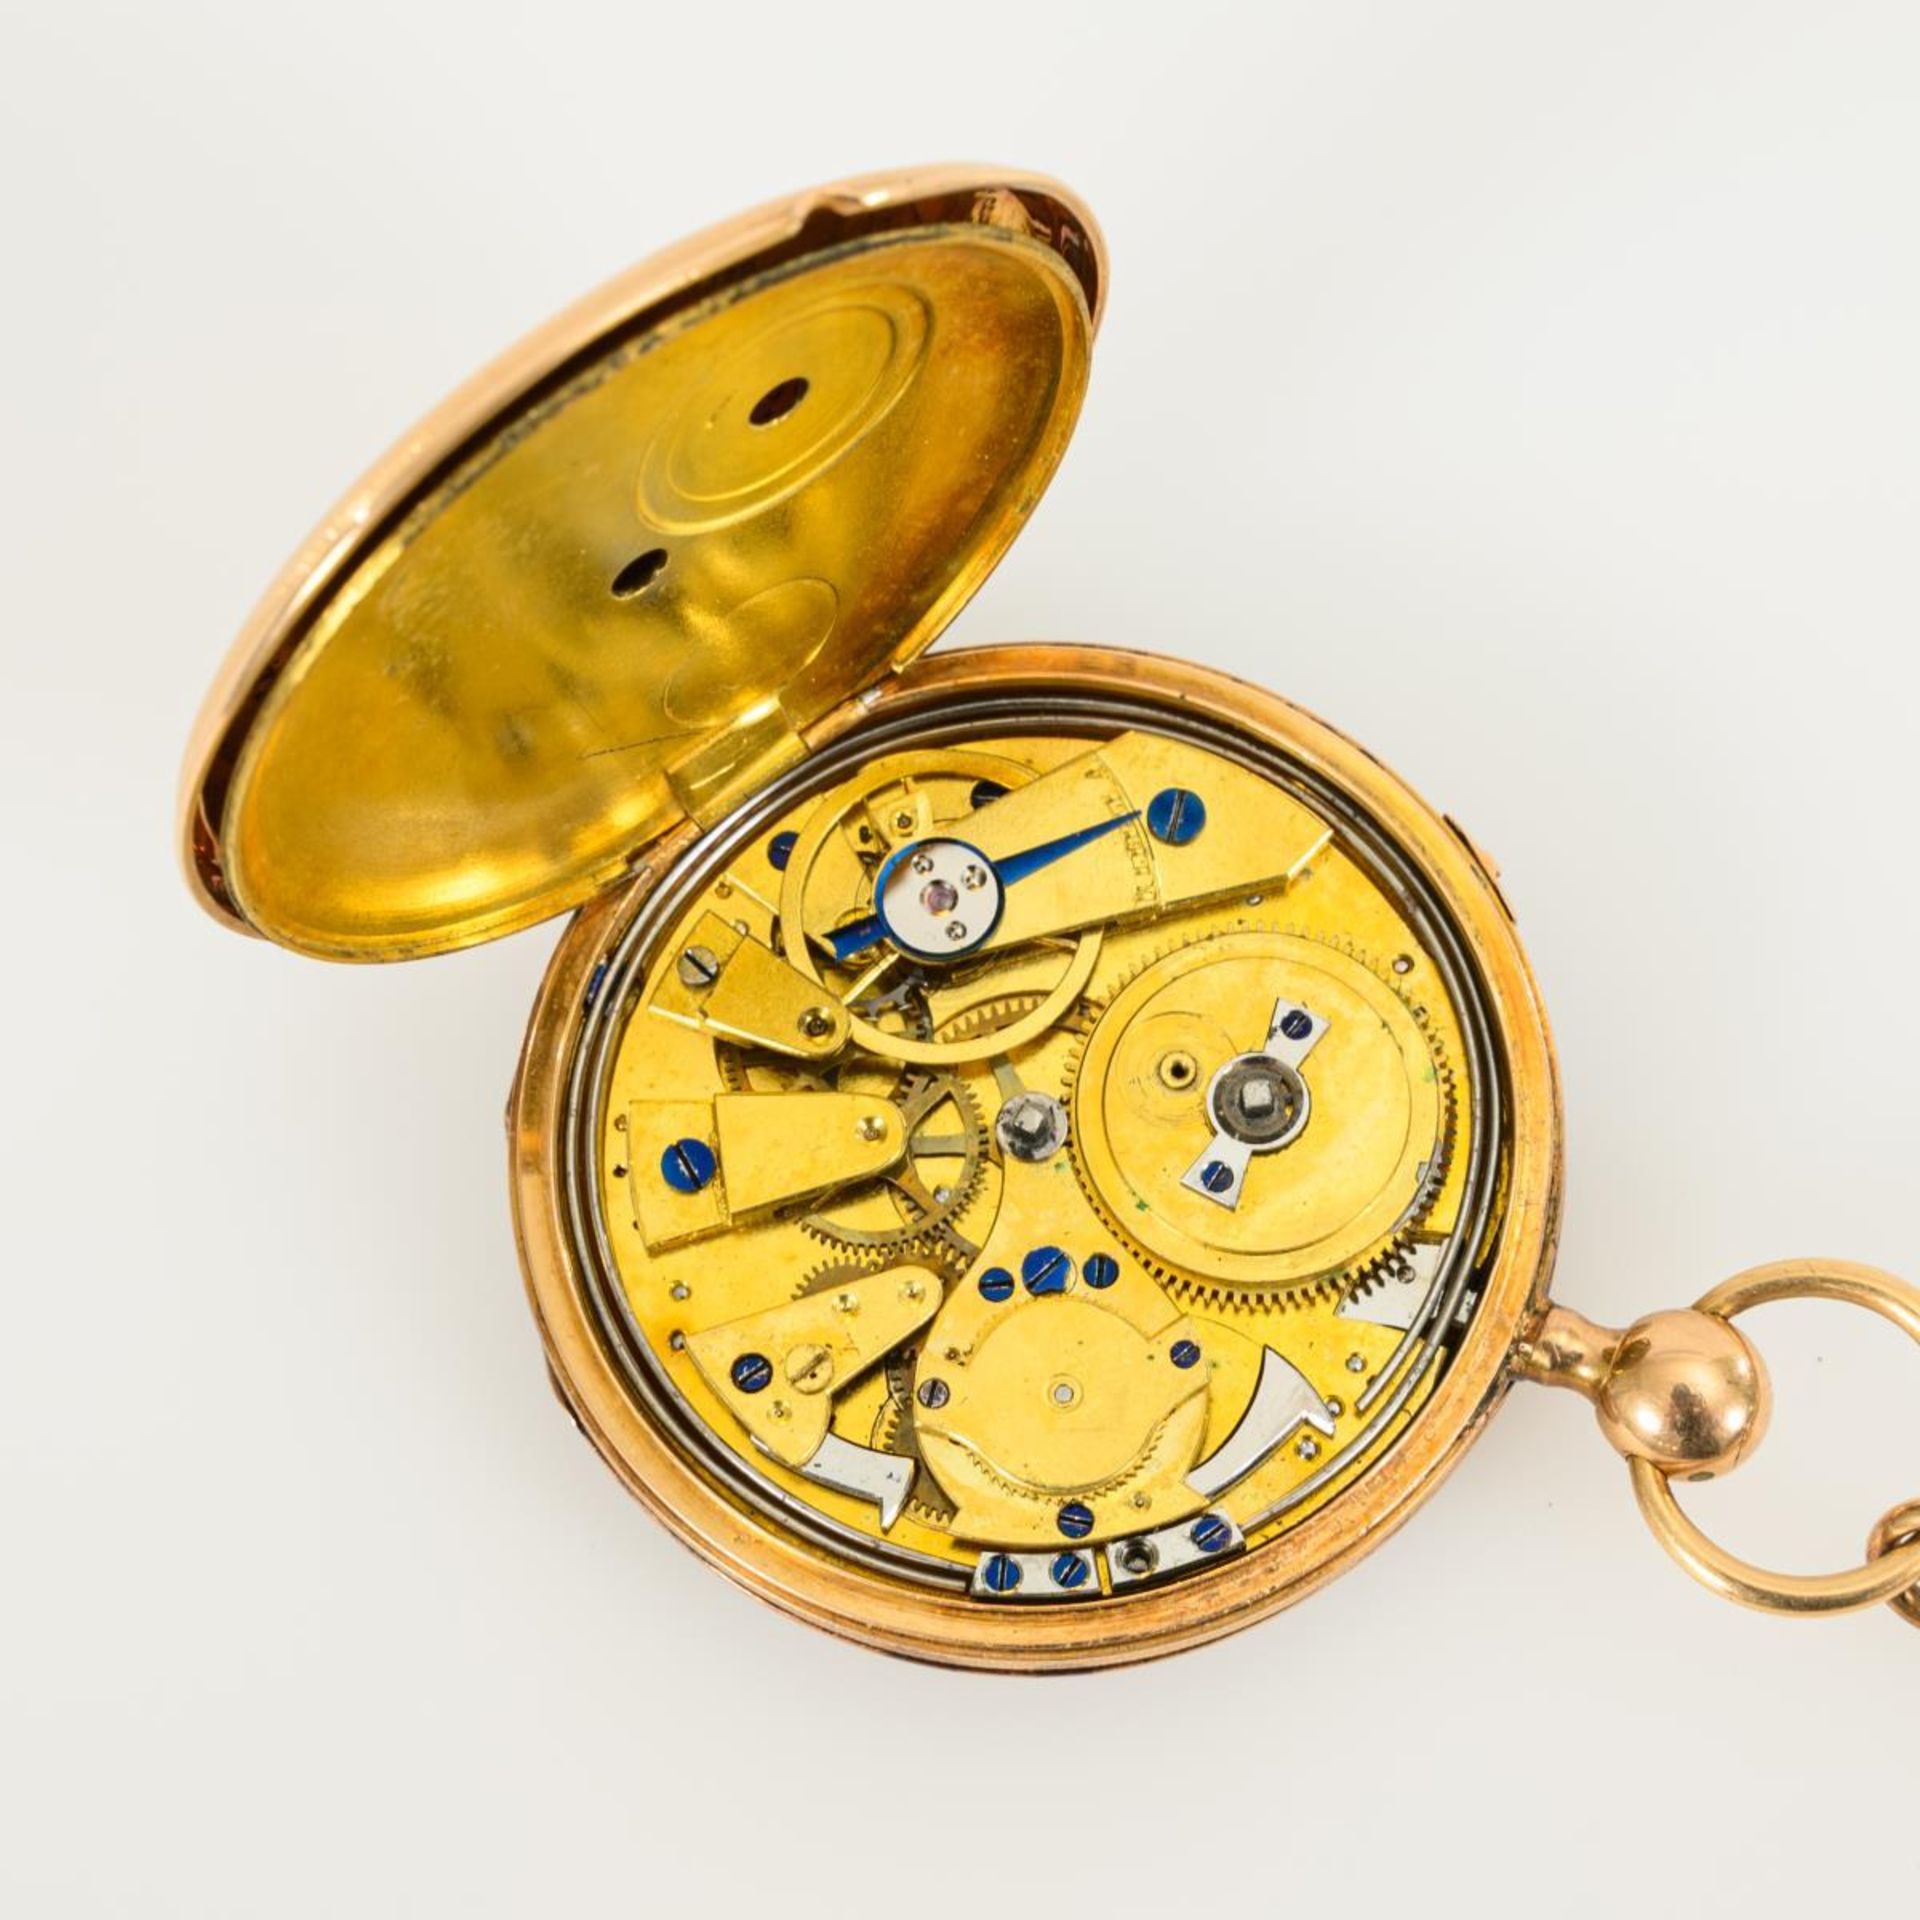 Goldene Schlüsseltaschenuhr mit Repetition und goldener Uhrenkette. - Bild 4 aus 4